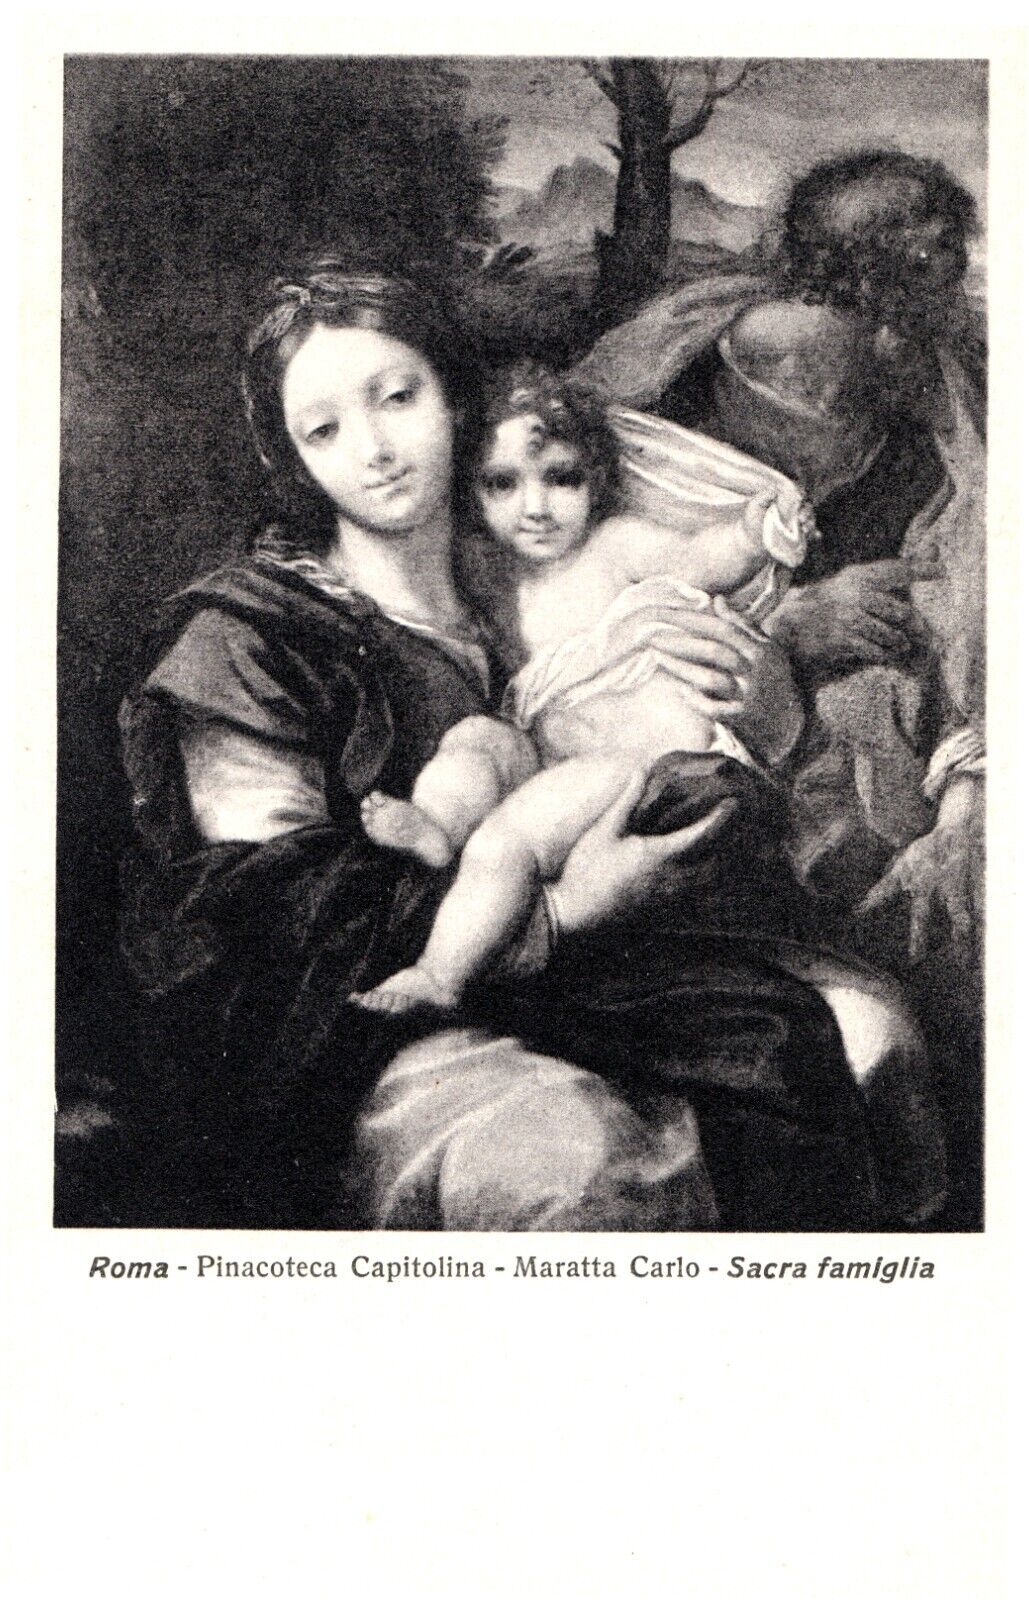 Vintage 1930s Carlo Maratta Postcard - Holy Family, Pinacoteca Capitolina